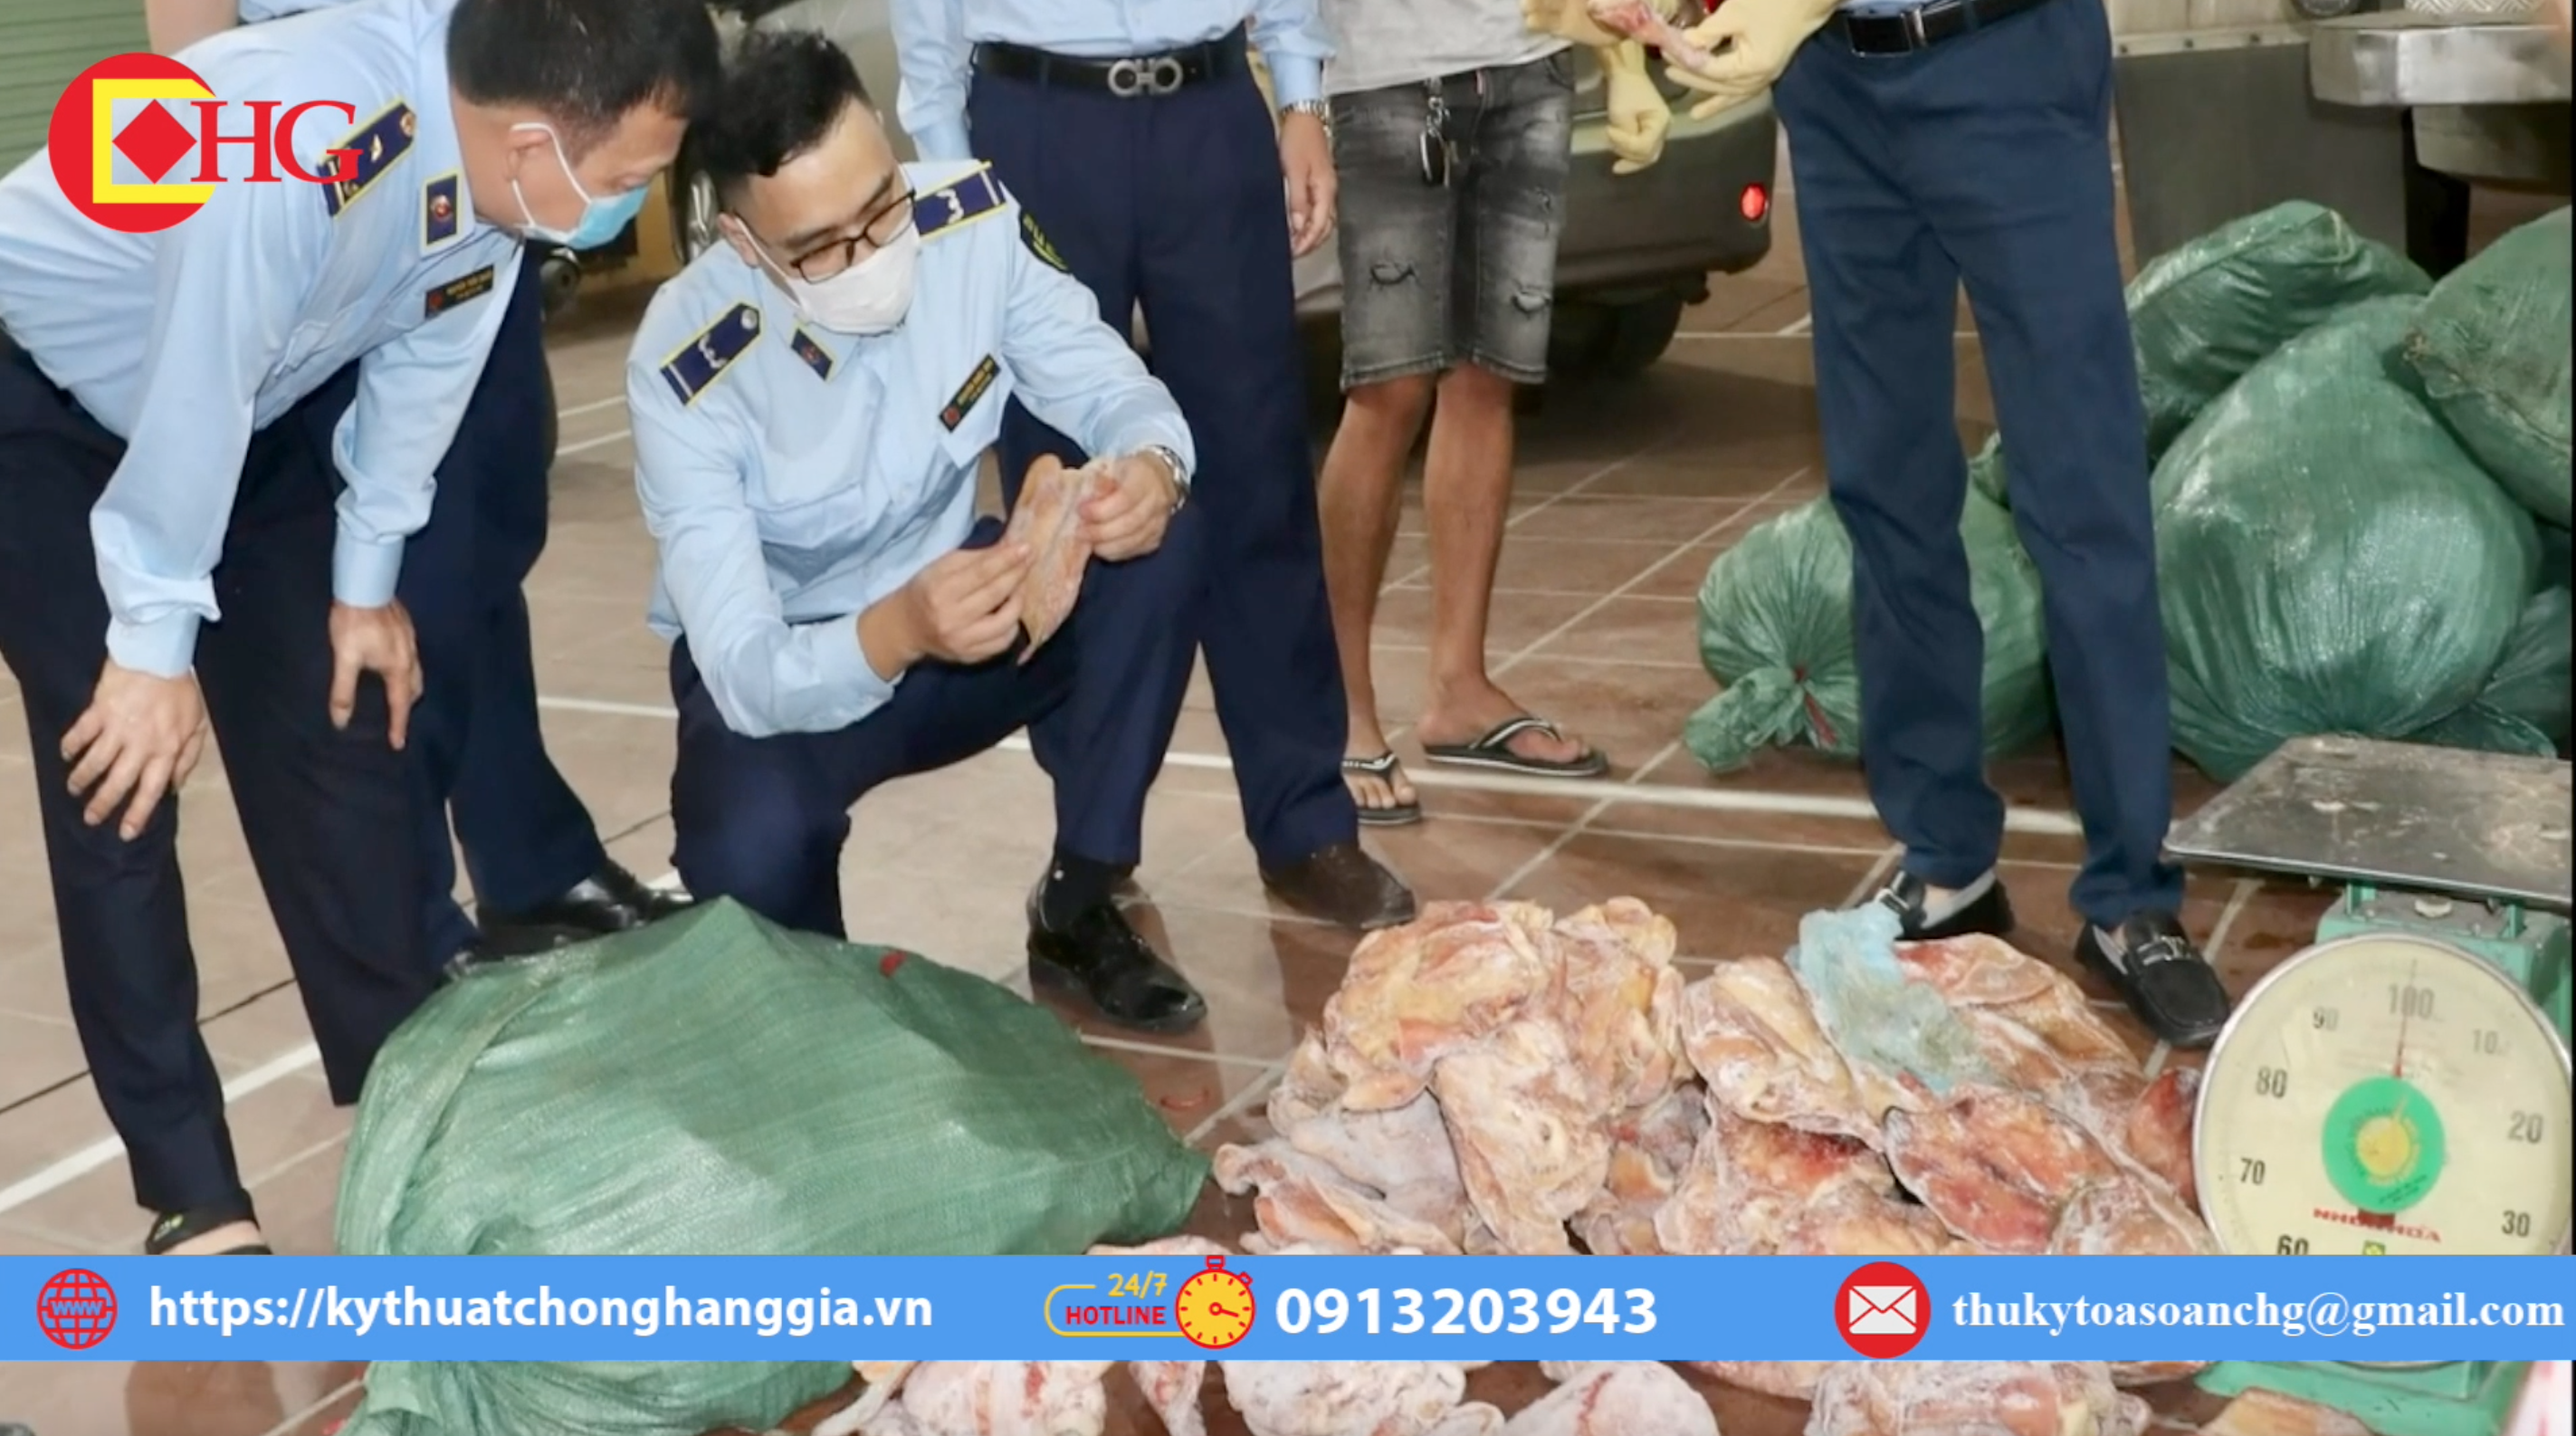 Thái Nguyên: phát hiện, tiêu hủy 2 tấn tai lợn không đảm bảo chất lượng